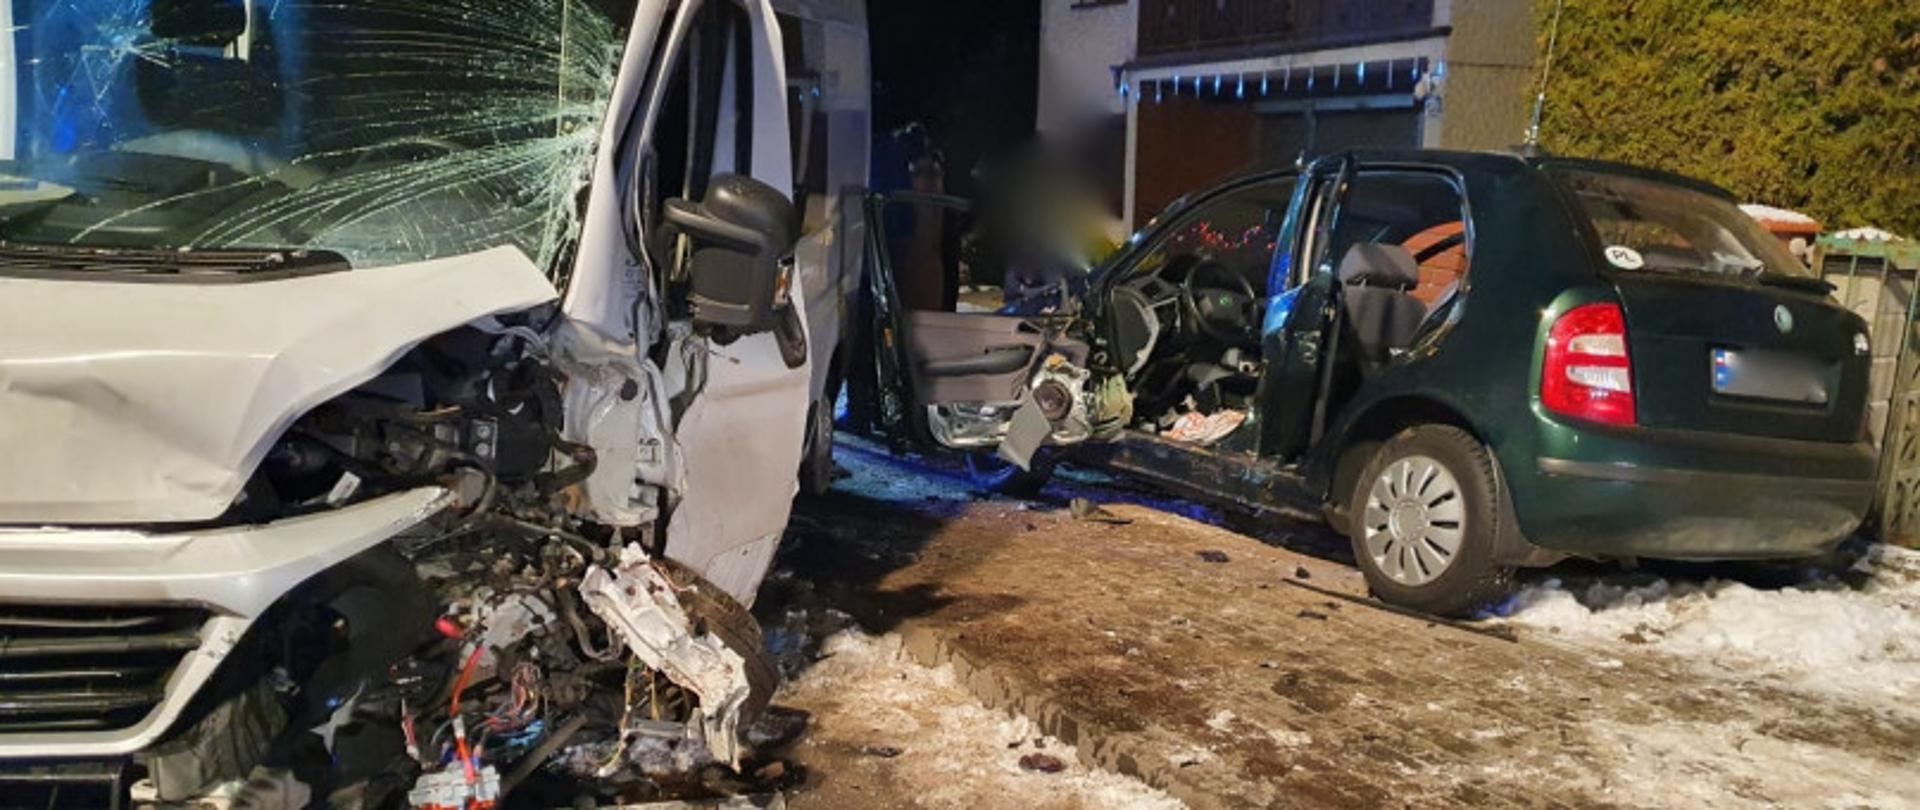 Zdjęcie przedstawia dwa rozbite samochody po zderzeniu